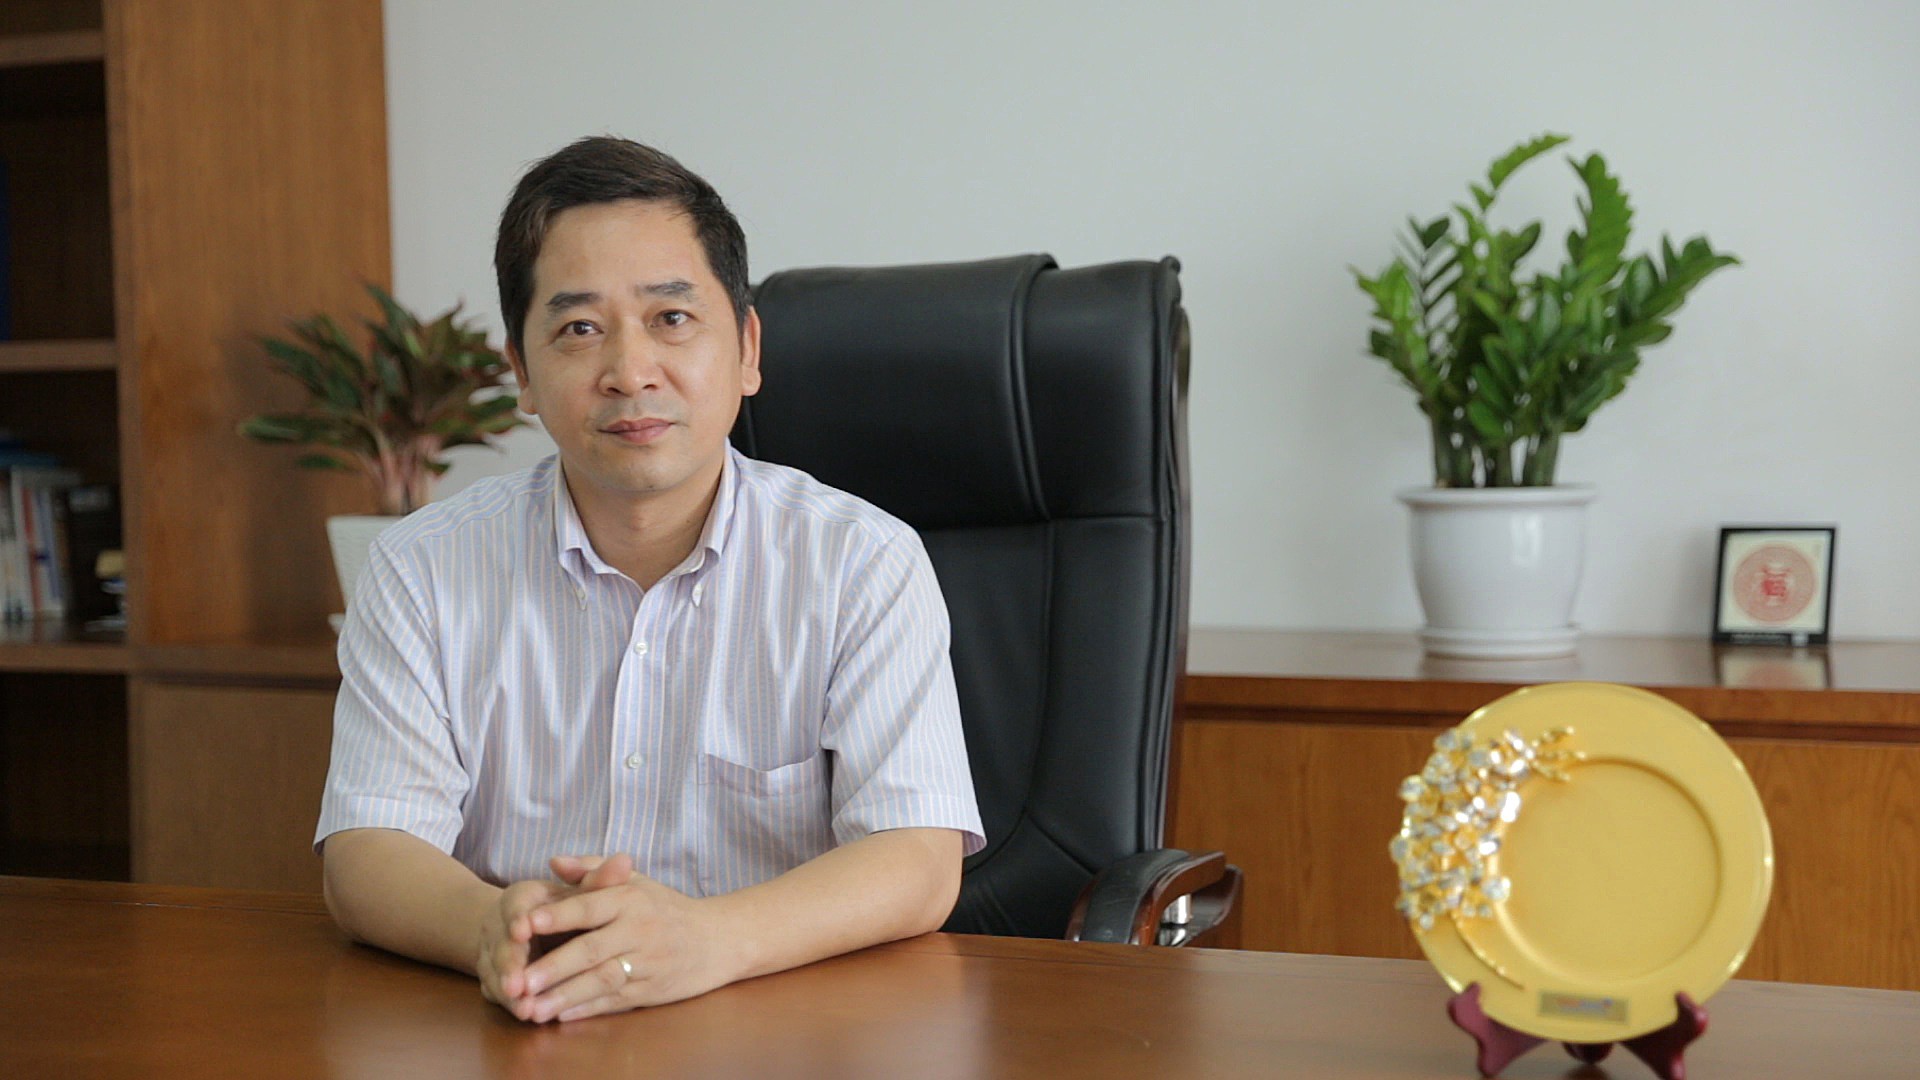 

Ông Võ Tiến Đạt - CEO của Ecoba Việt Nam chia sẻ rằng: “Để công ty có thể phát triển nhanh và bền vững như trong thời gian vừa qua thì không thể không kể đến các yếu tố nền tảng như con người, văn hóa doanh nghiệp lẫn cách quản trị".
